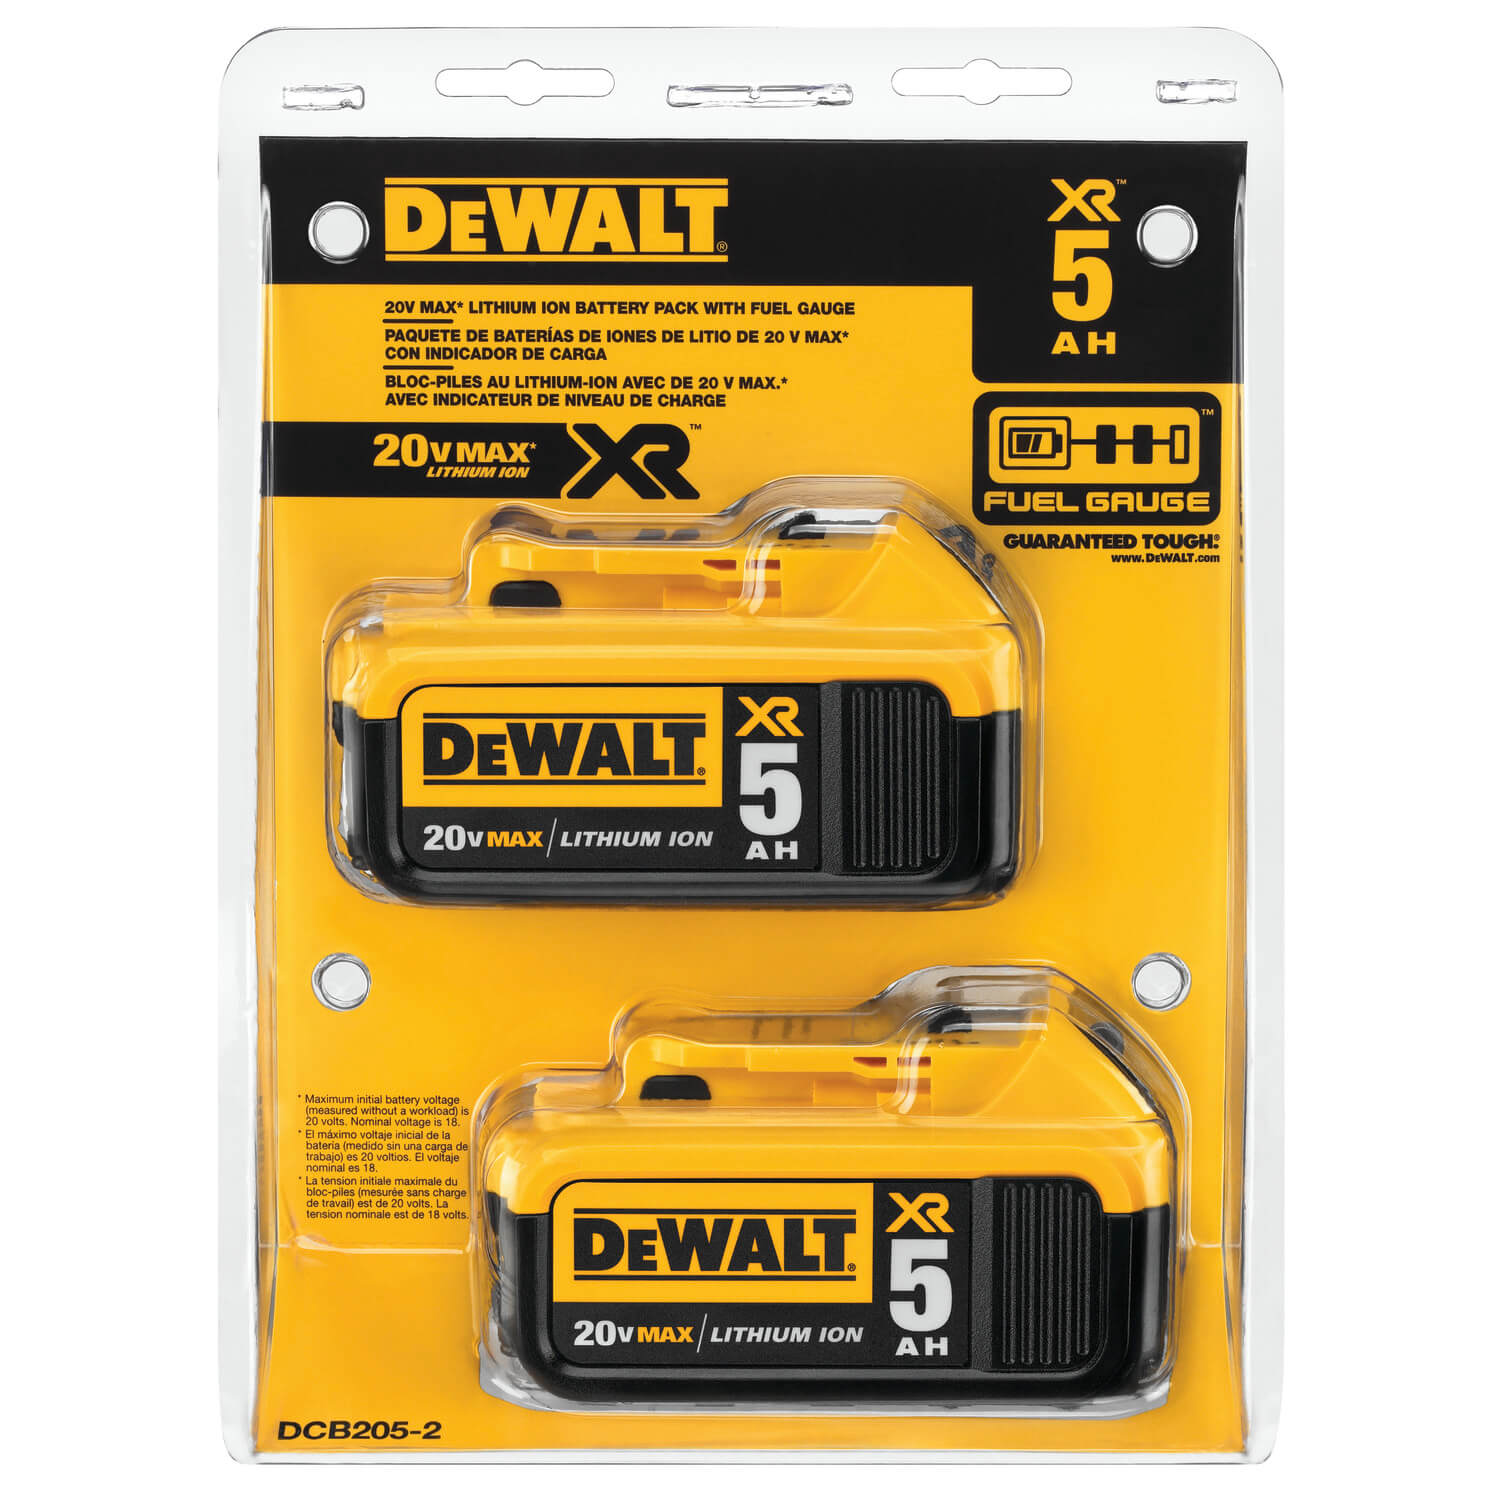 DEWALT, DEWALT DCB205-2 20V MAX XR 5.0Ah Lithium Ion Battery, 2-Pack